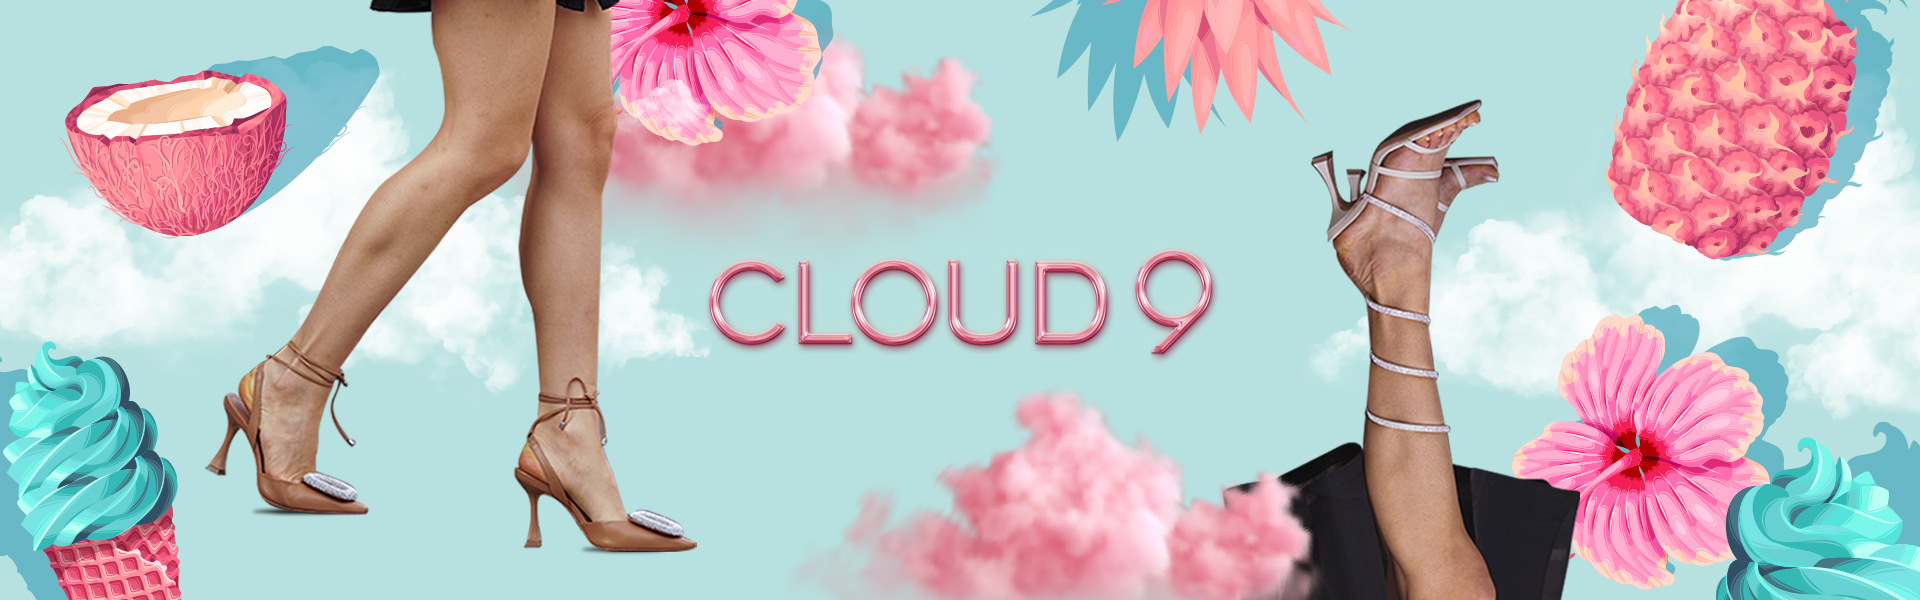 Cloud9_main_baner